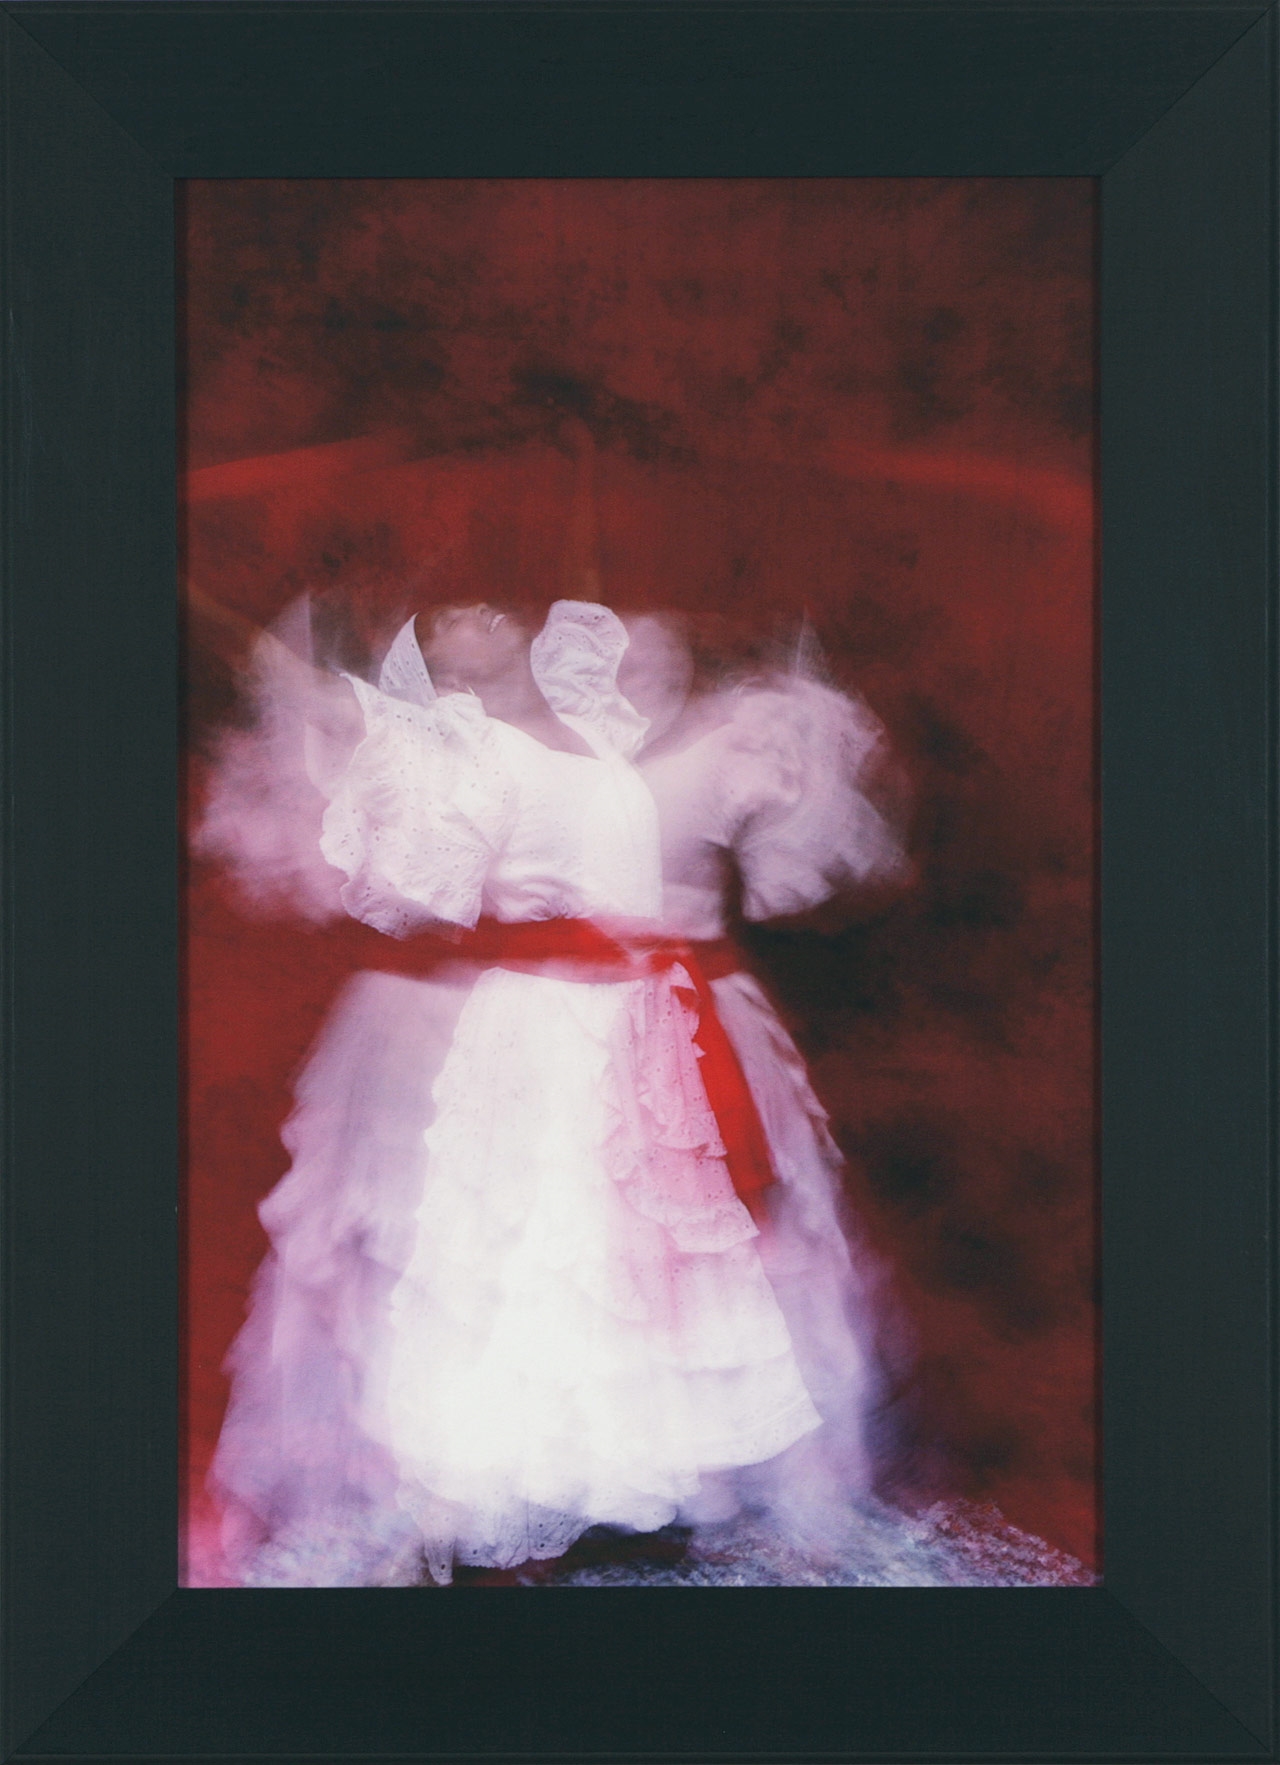 Victory, 2015. Kevin Calixte. Photographie numérique sur papier d’art Hahnemuhle 350 gsm 75 x 55 cm. © L'Artothèque 